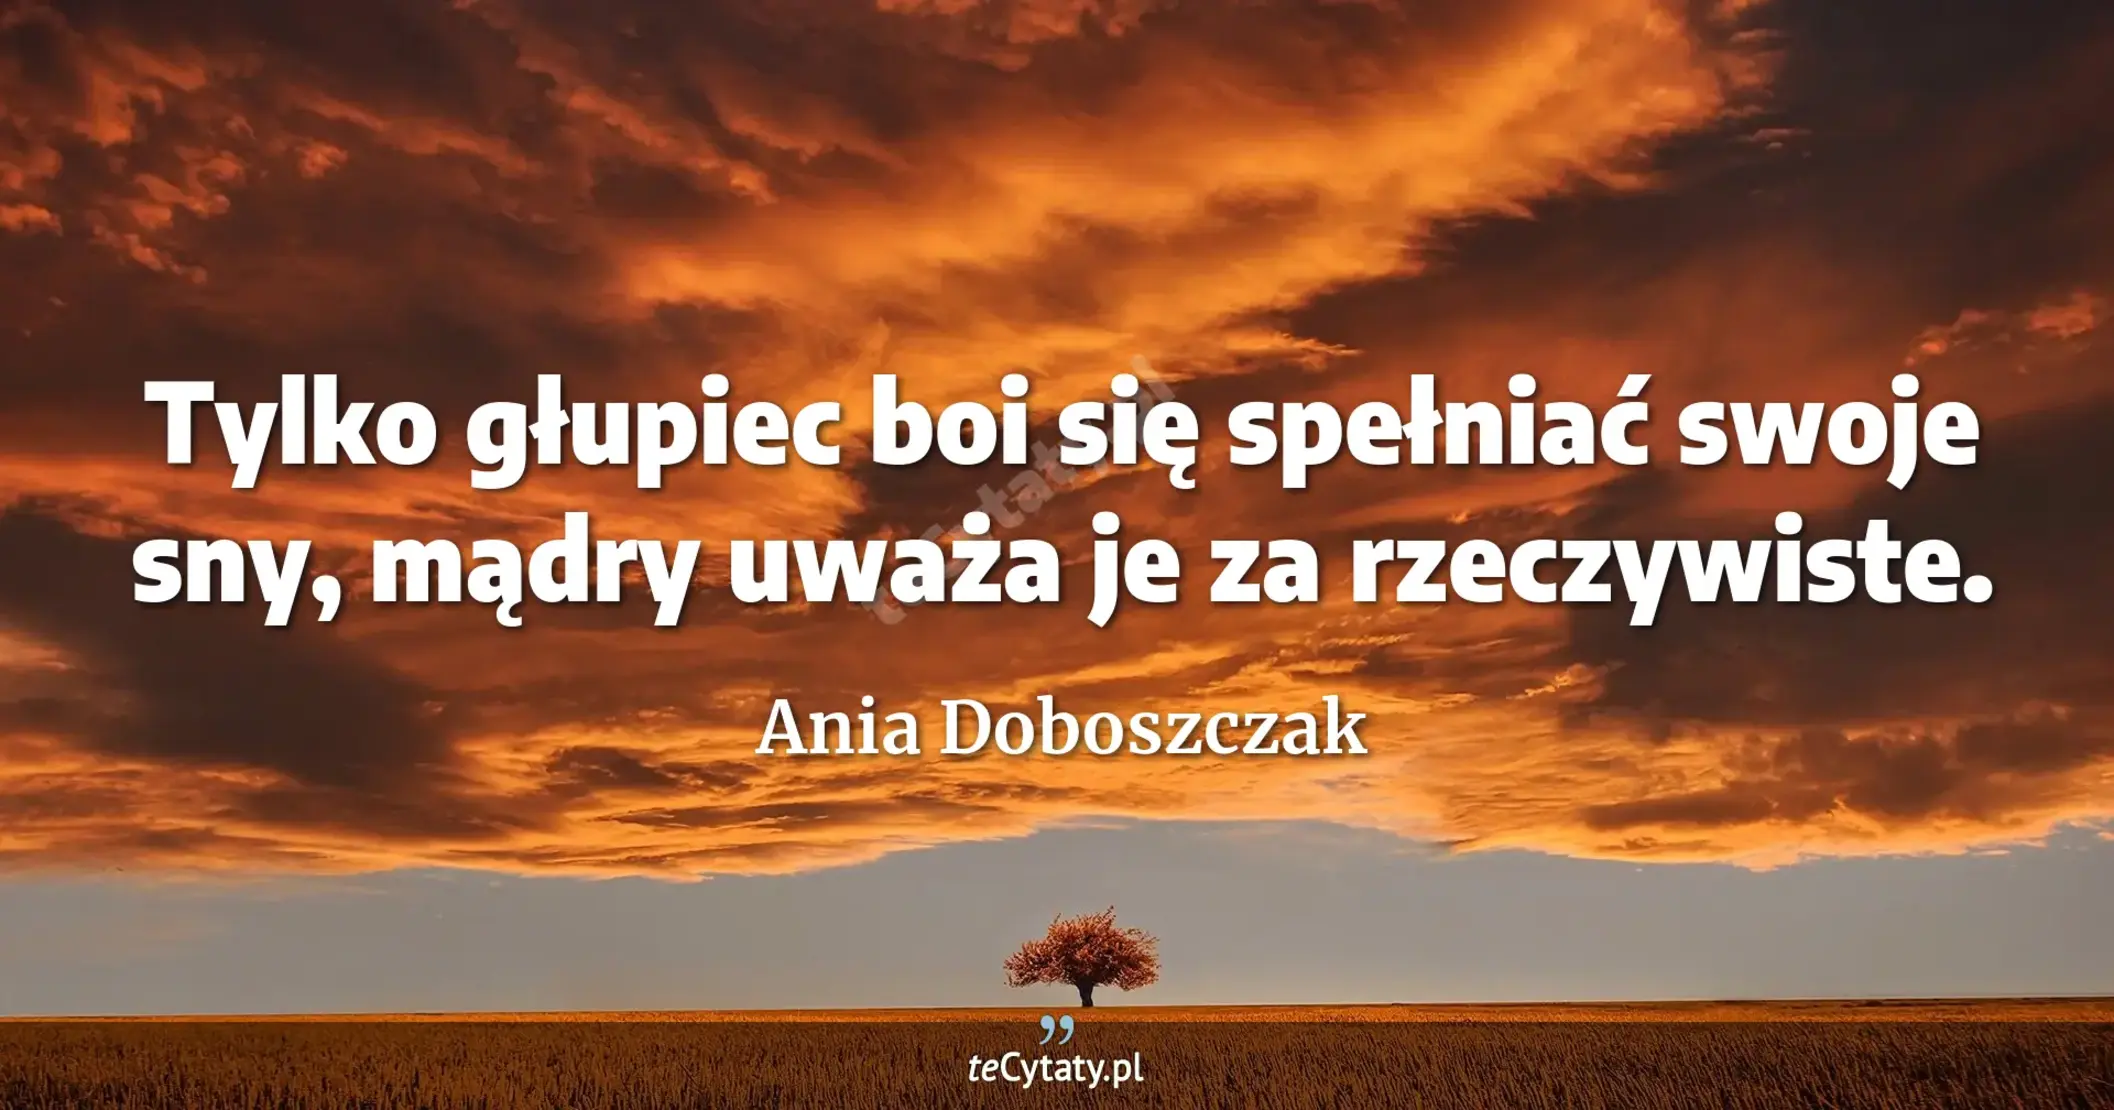 Tylko głupiec boi się spełniać swoje sny, mądry uważa je za rzeczywiste. - Ania Doboszczak